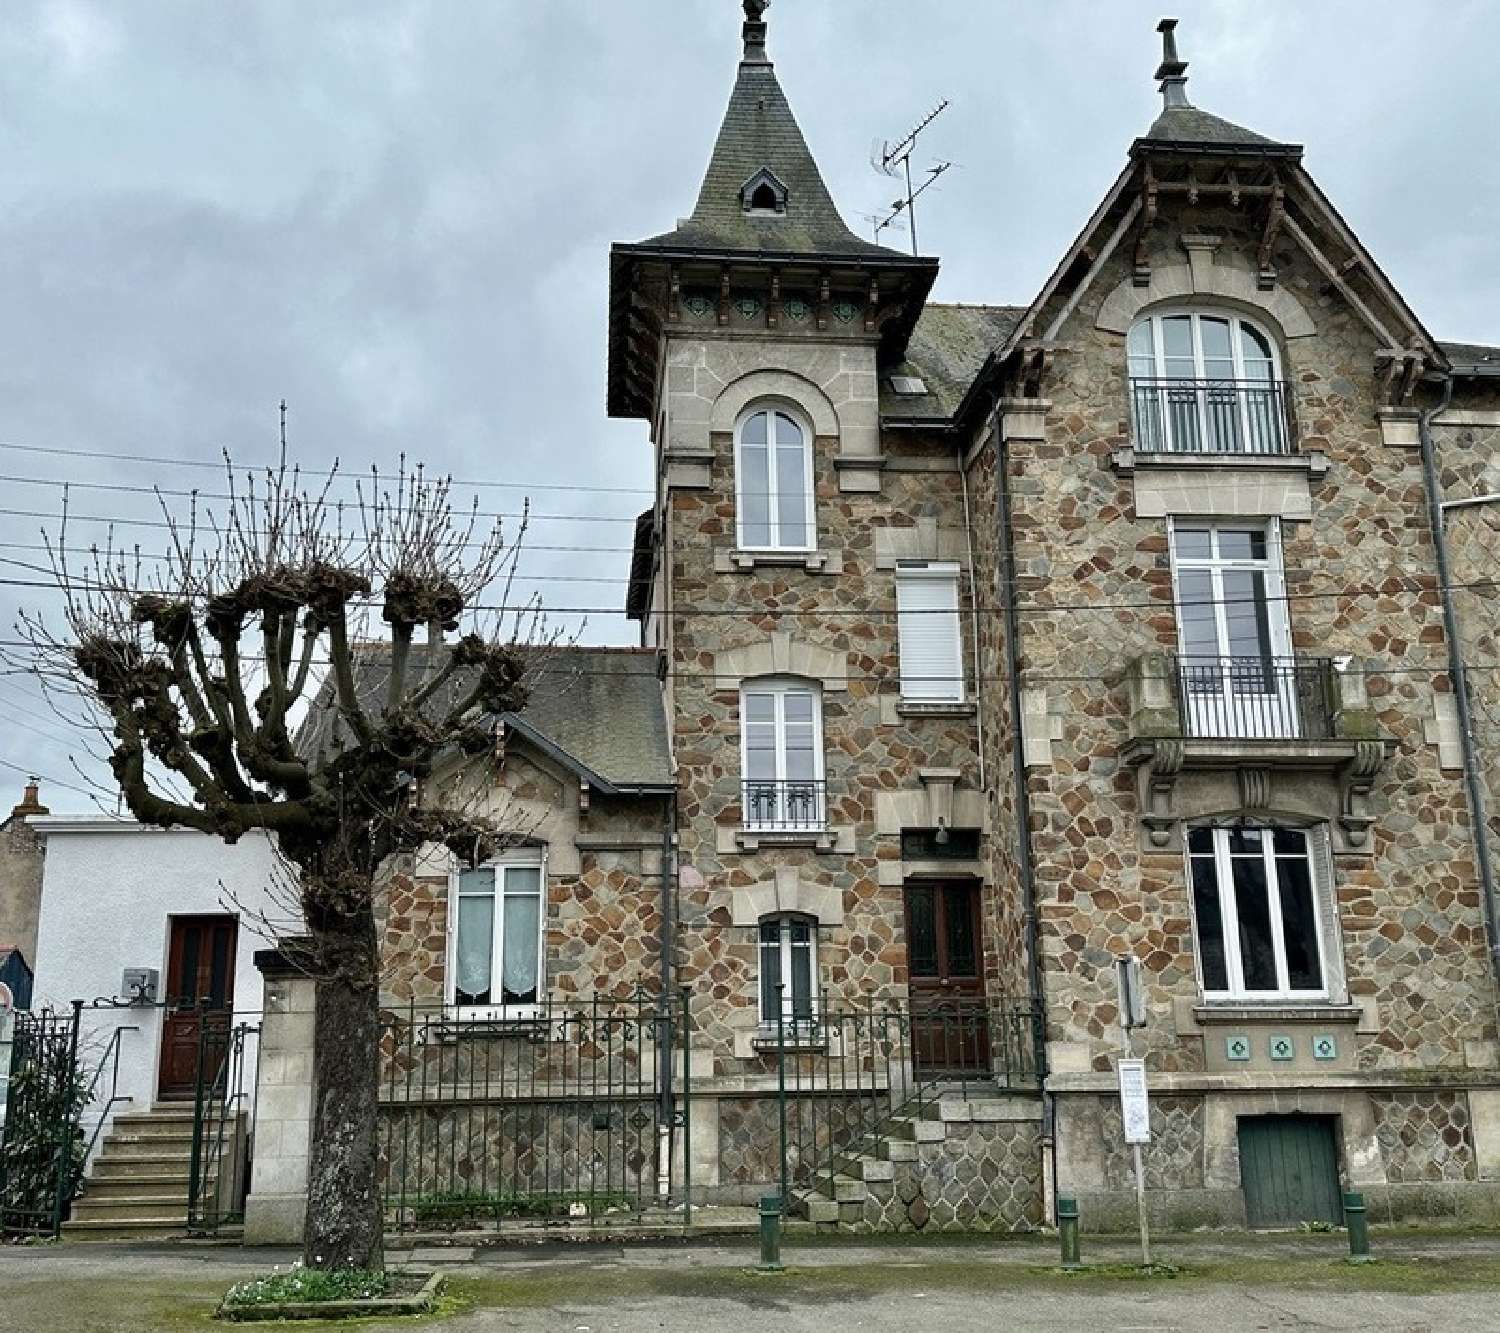  à vendre maison bourgeoise Châteaubriant Loire-Atlantique 1